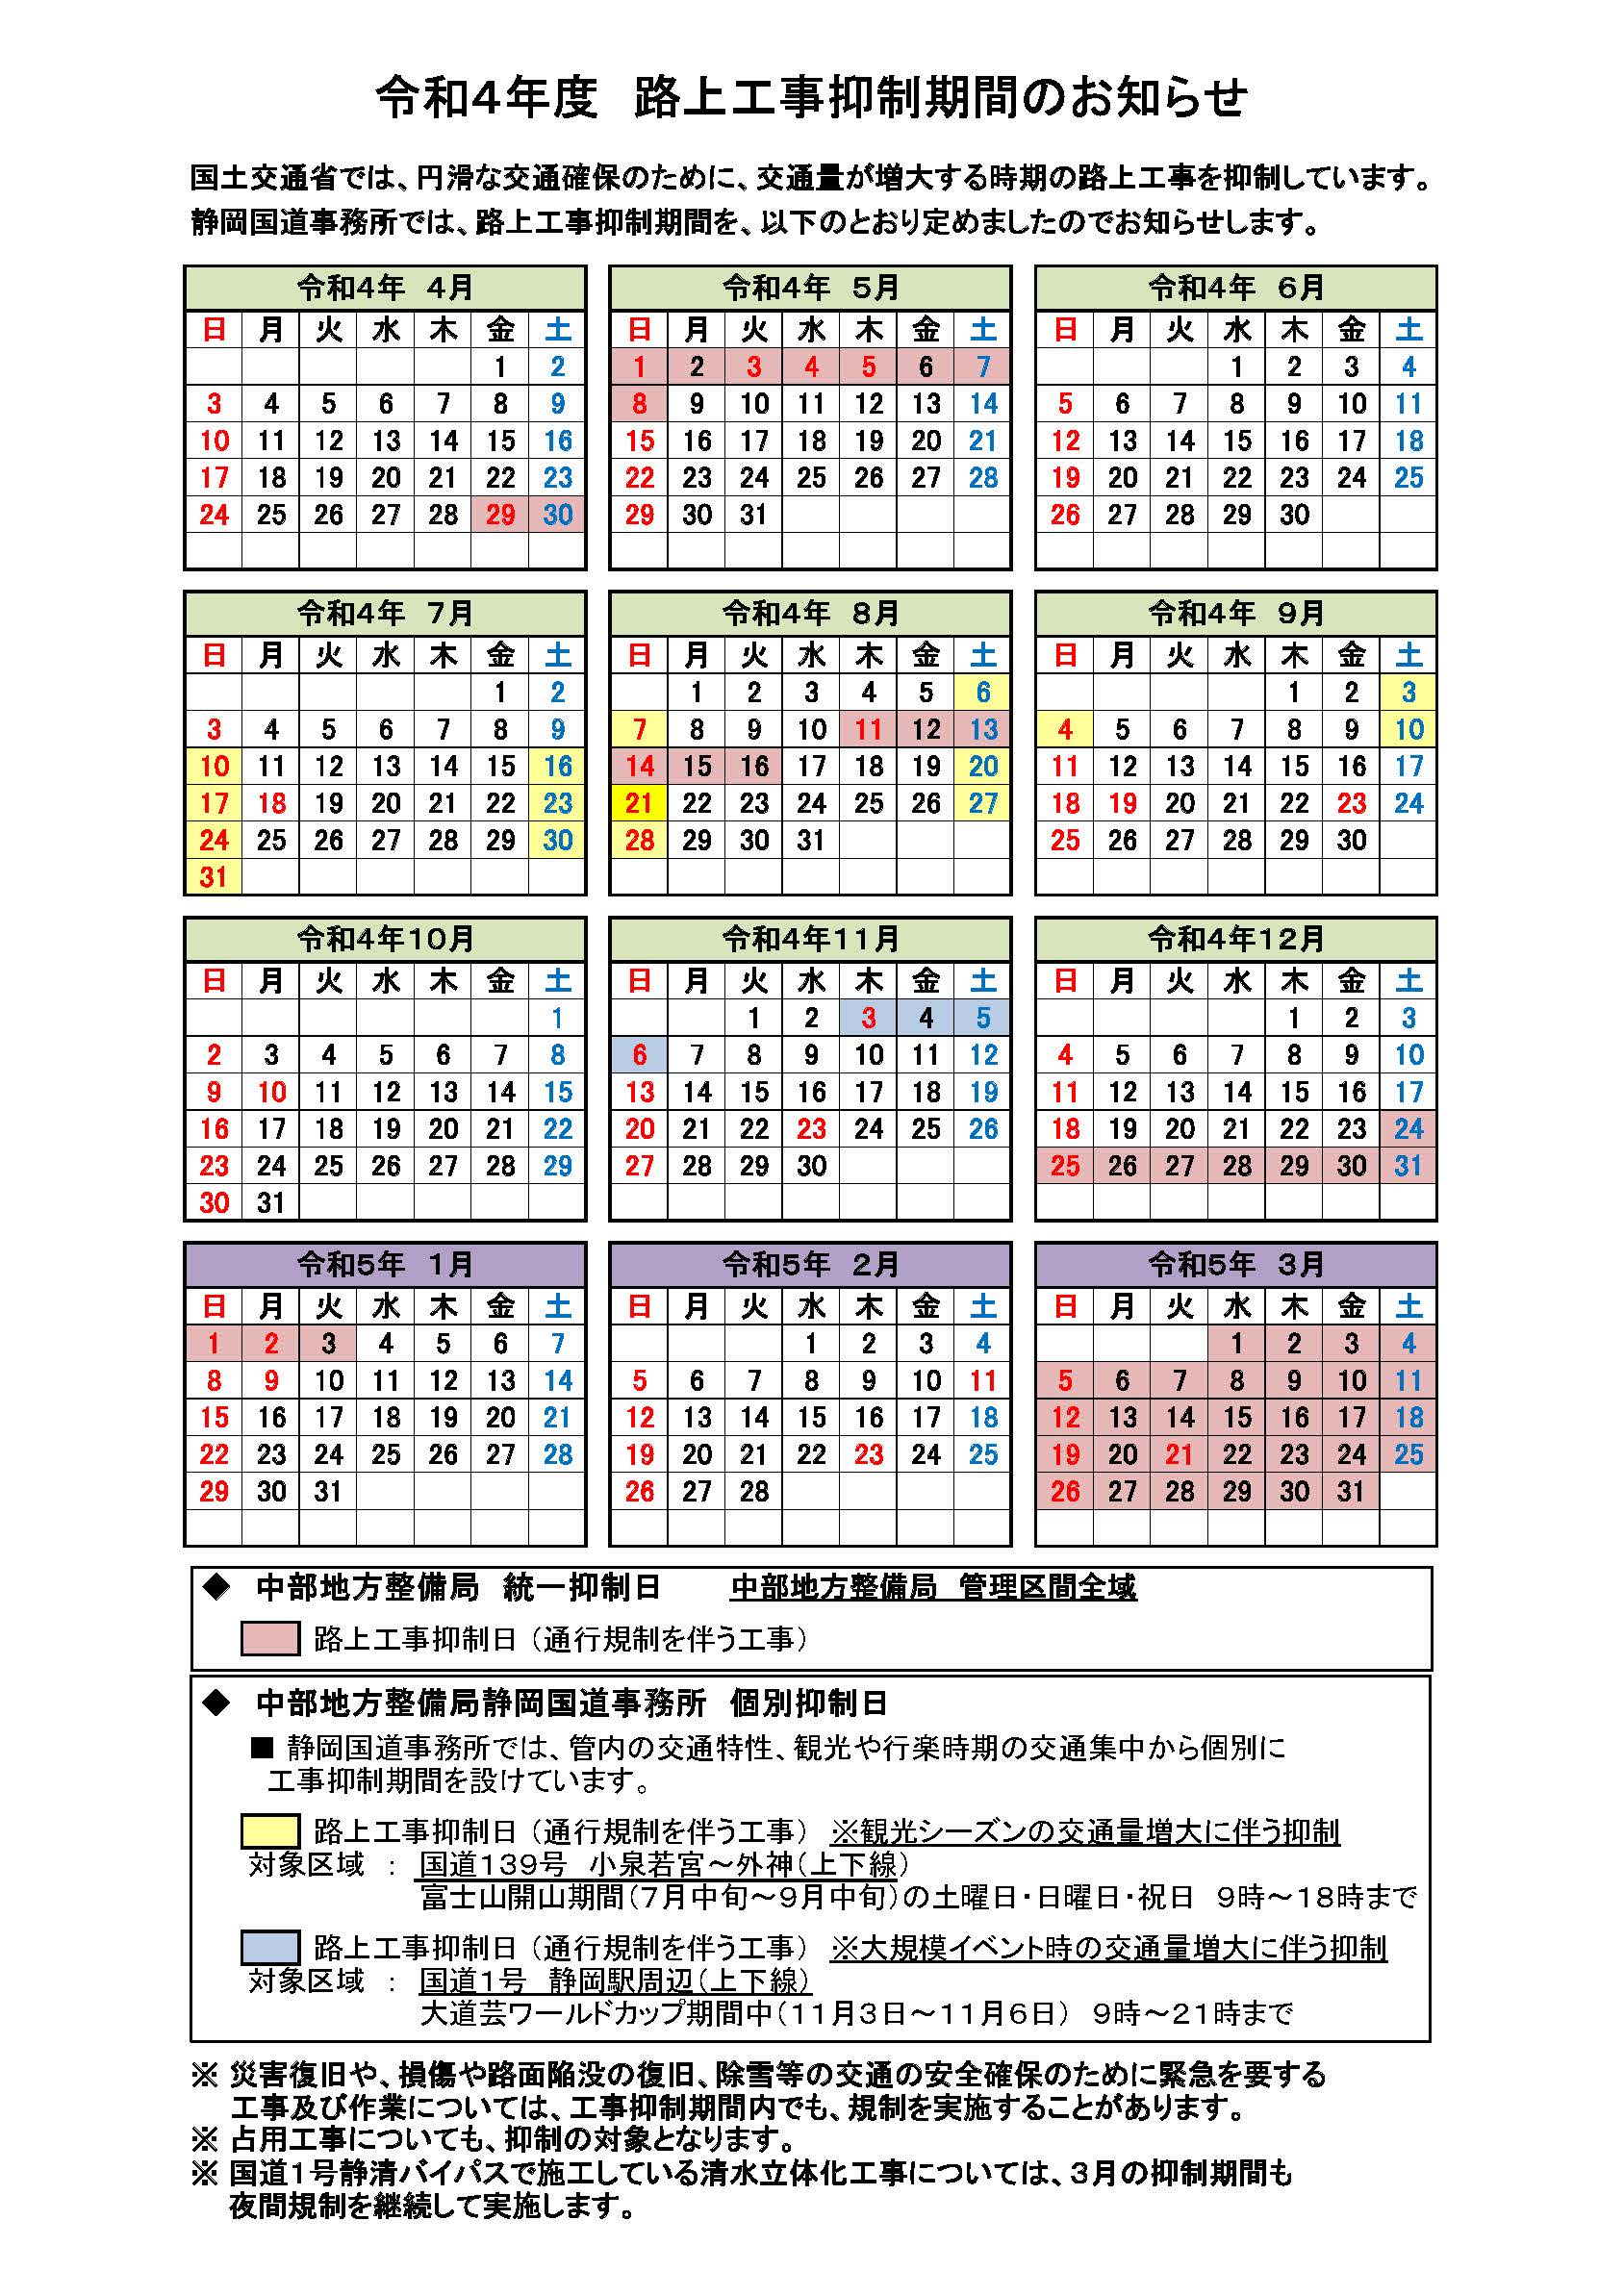 路上工事抑制期間カレンダー